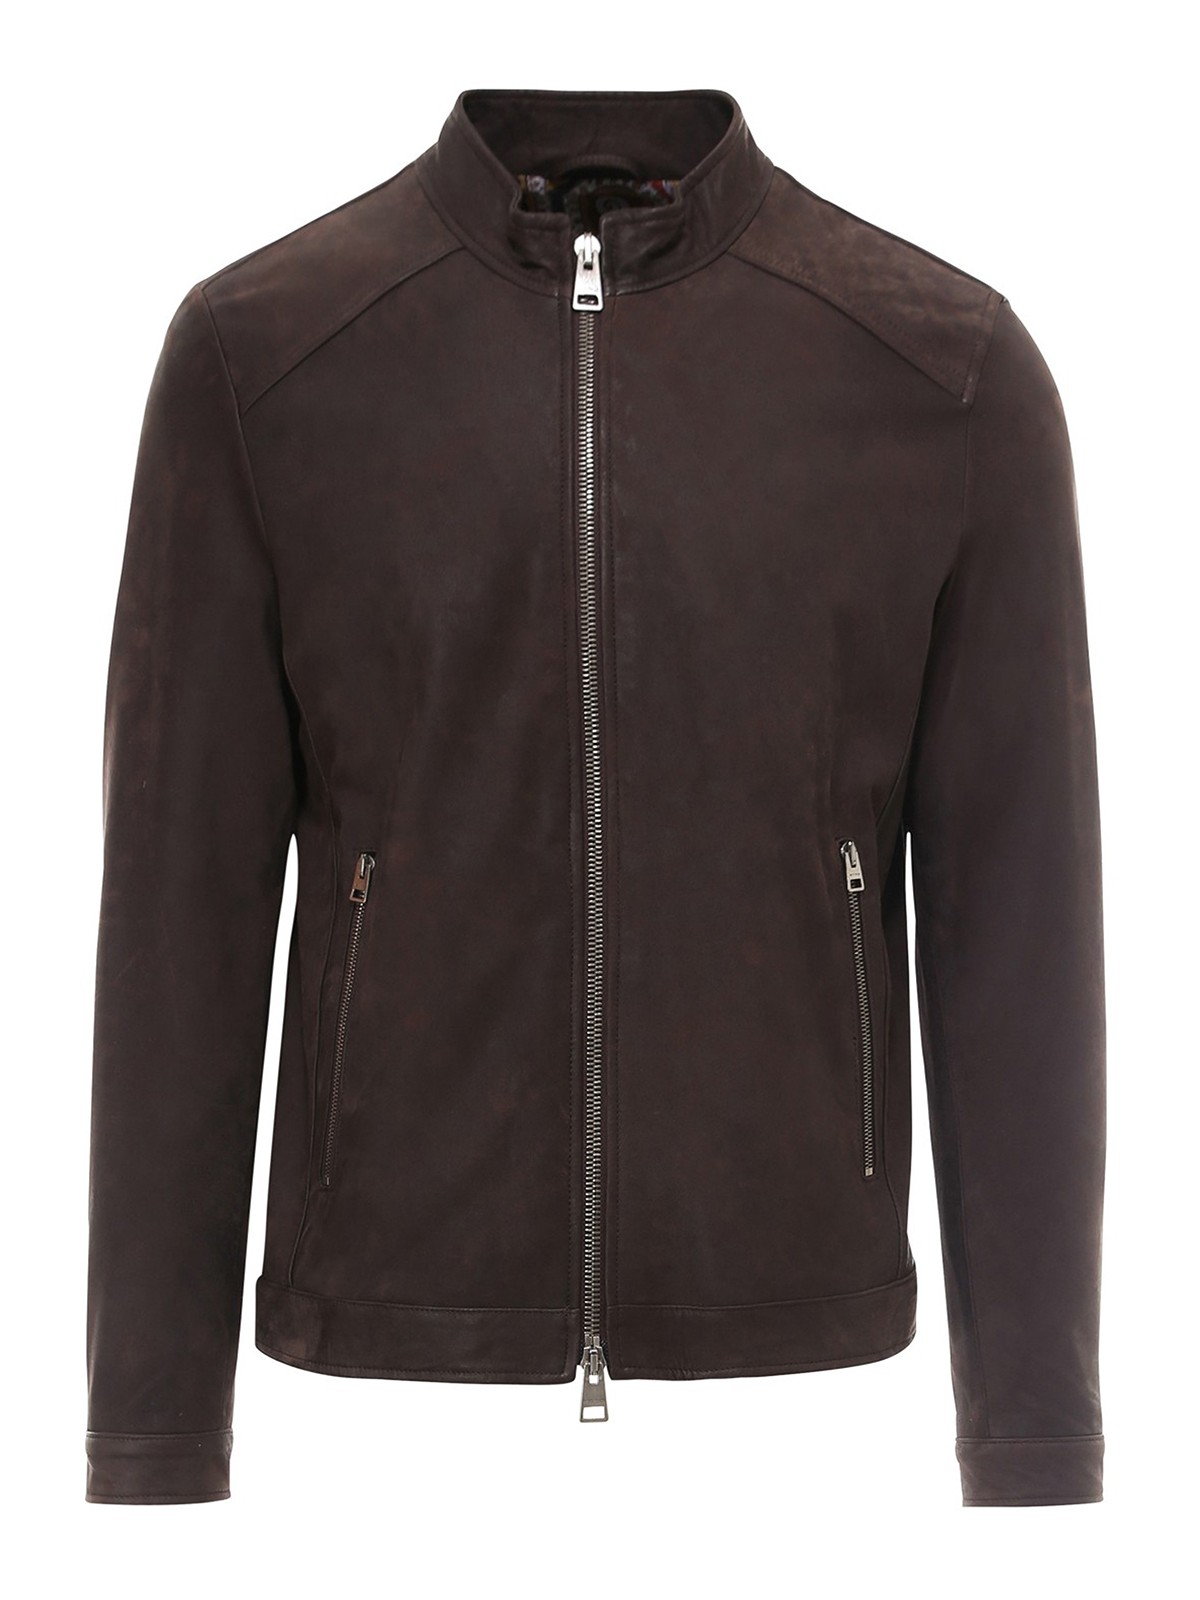 Leather jacket Etro - Leather jacket - 1L0539475100 | Shop online at iKRIX